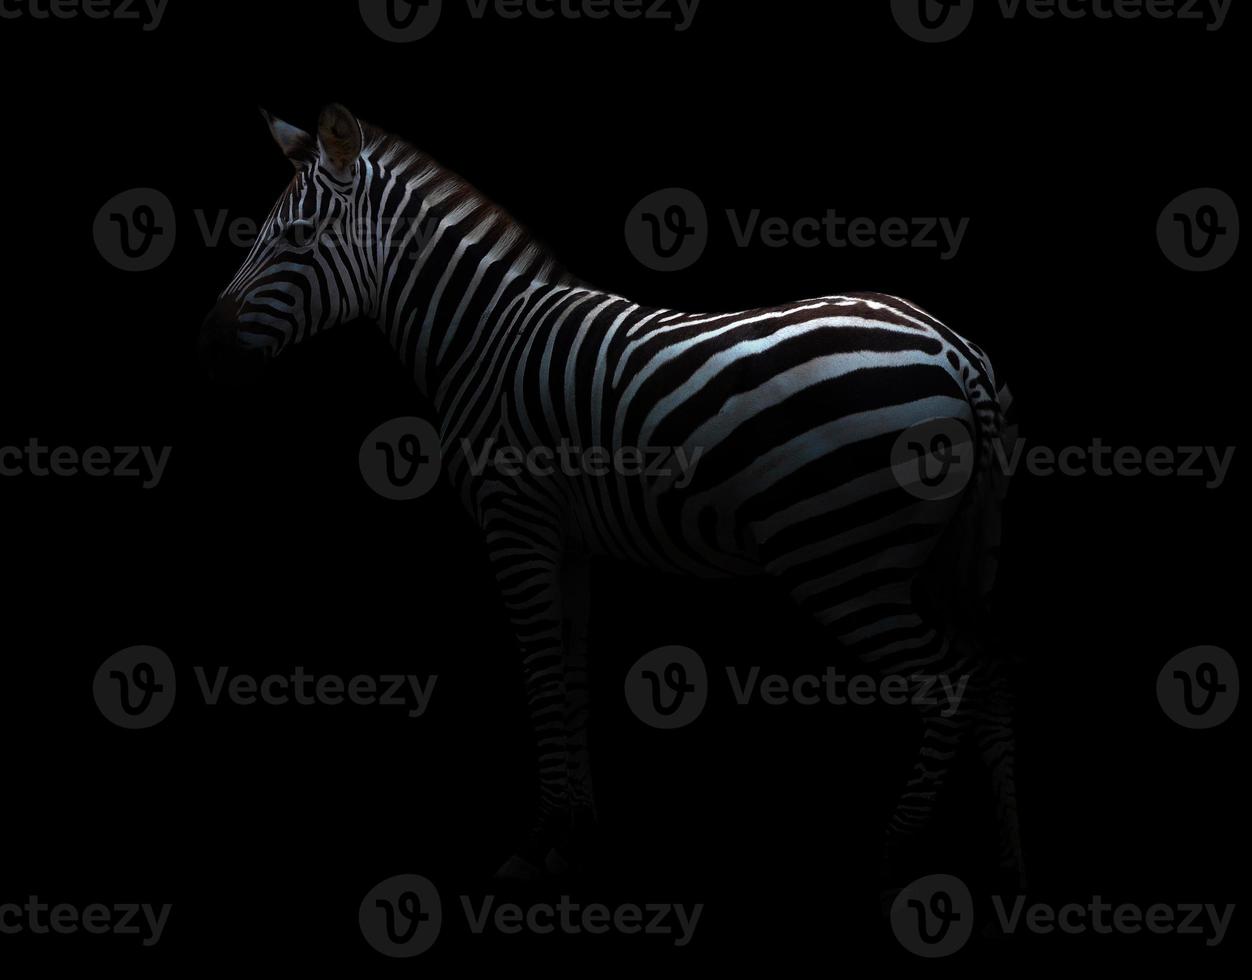 zebra in the dark photo